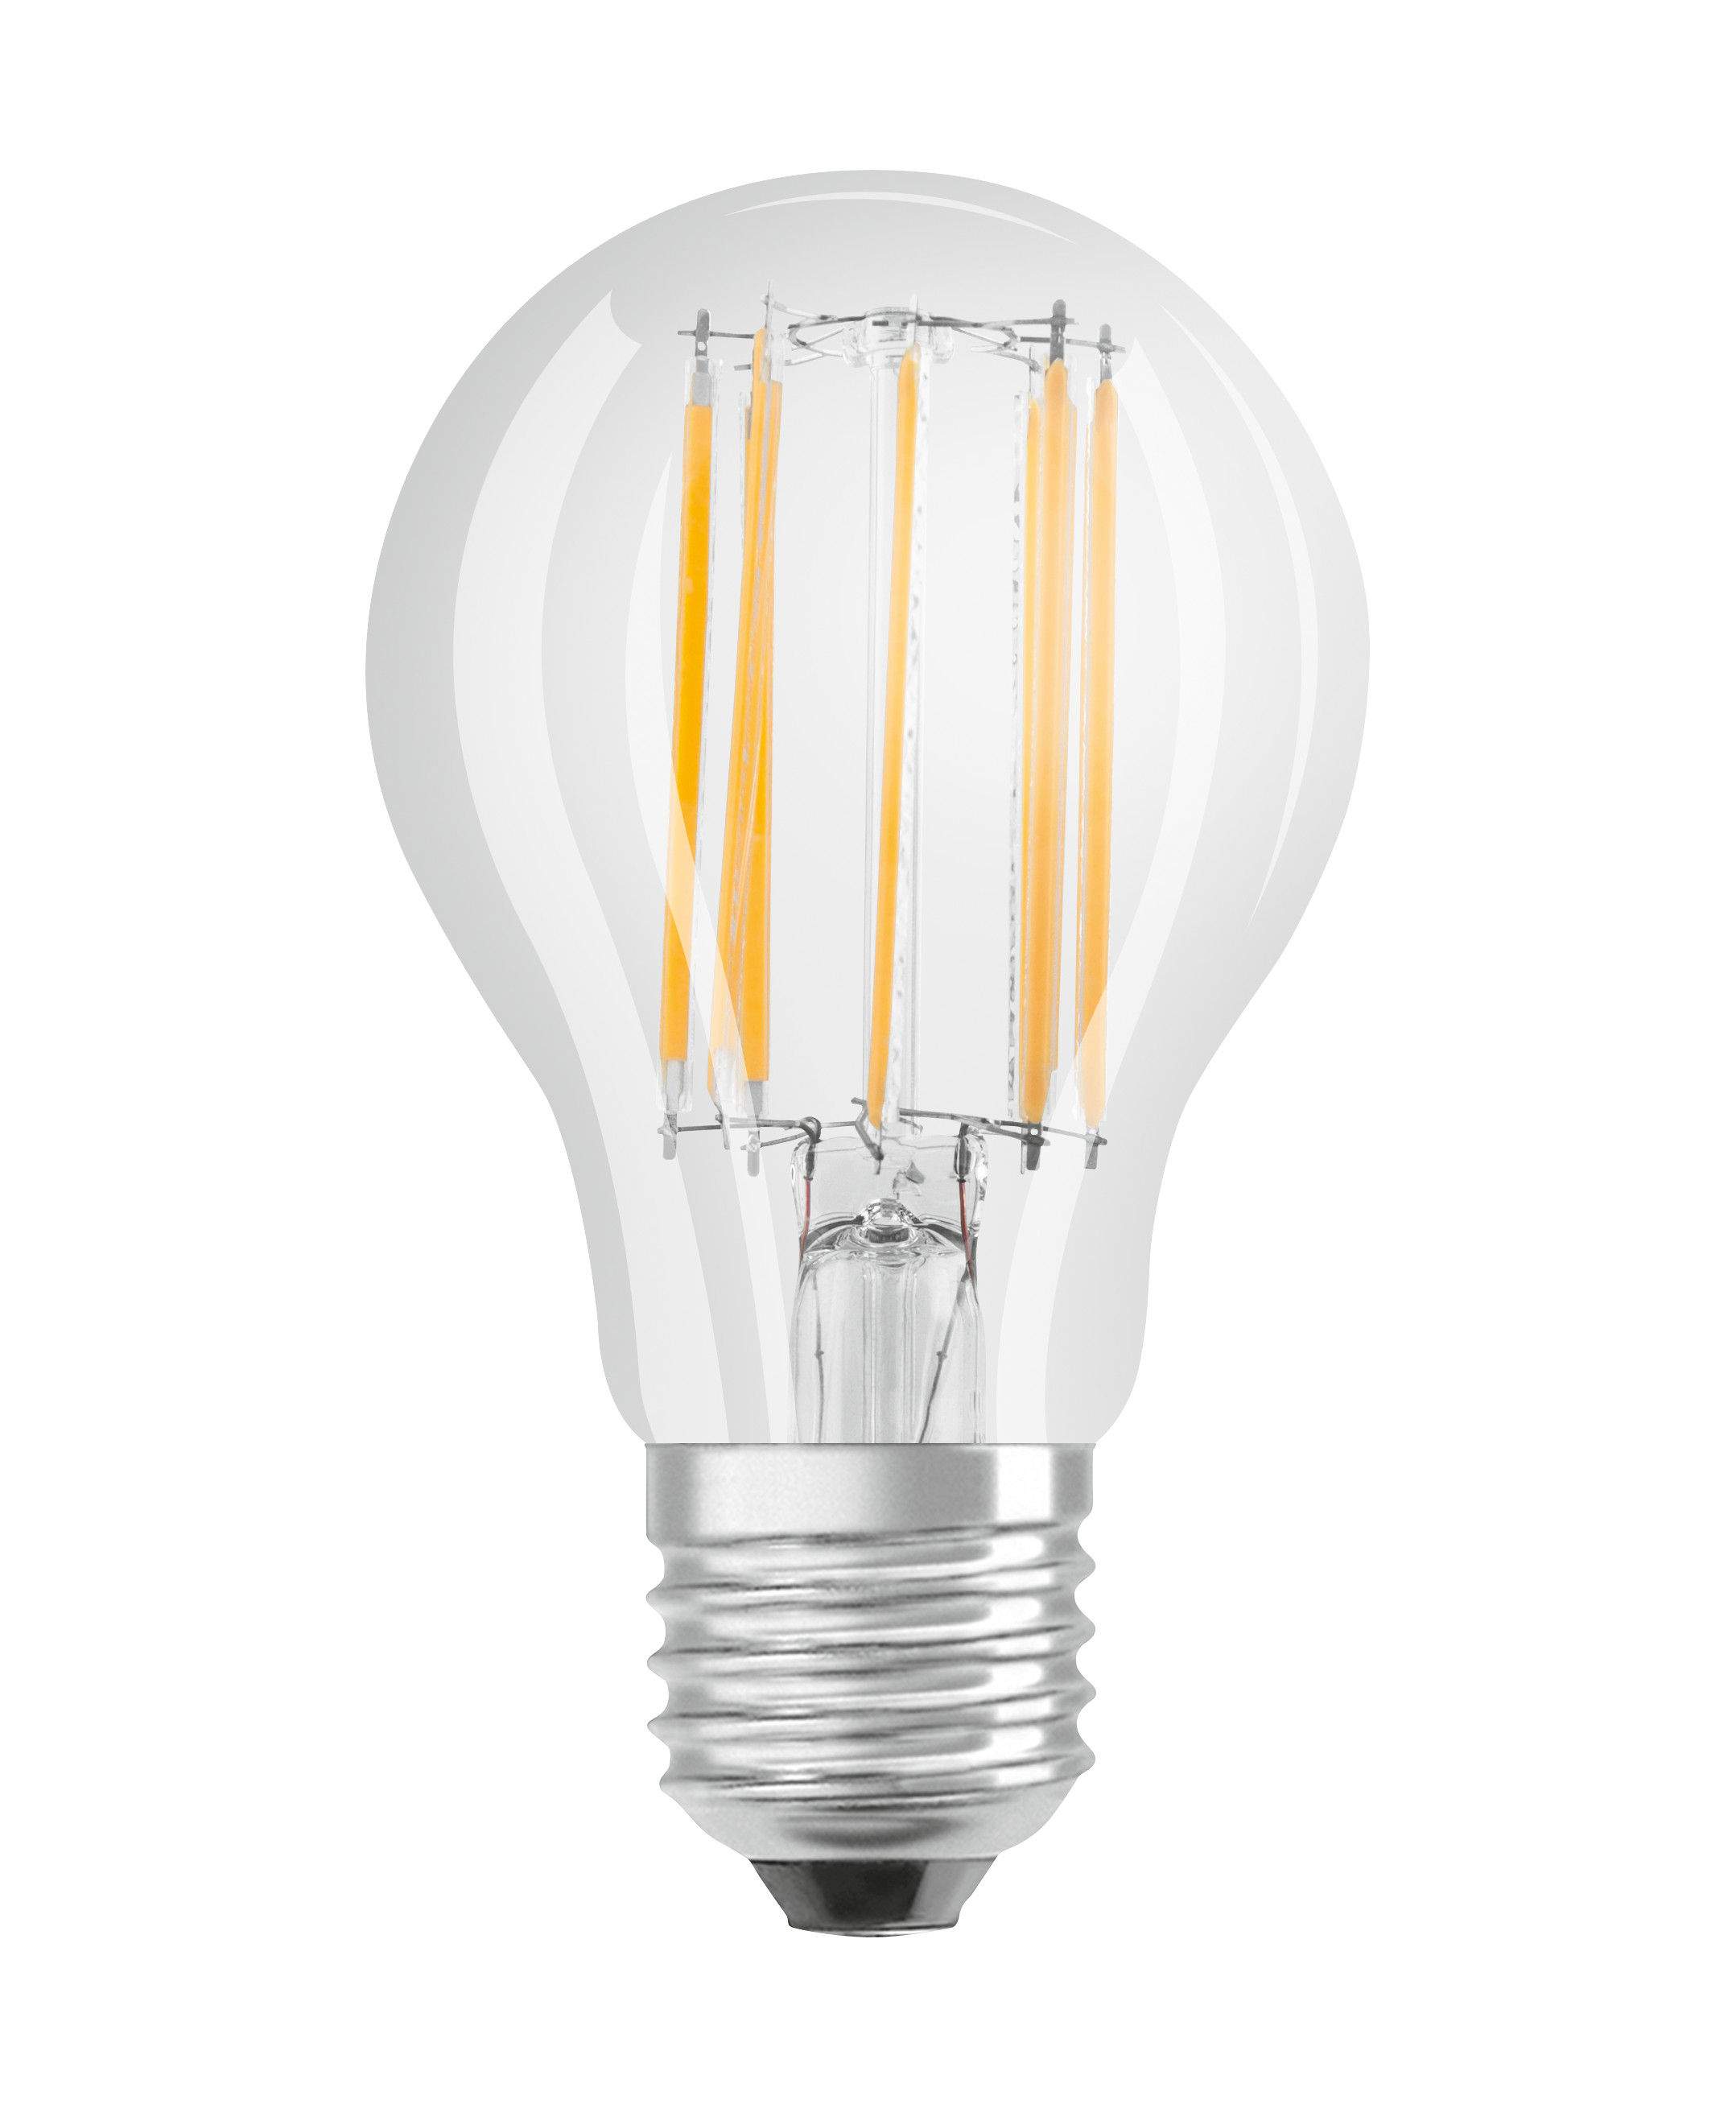 Ampoule LED verre transparent standard E27, 4W, blanc chaud.